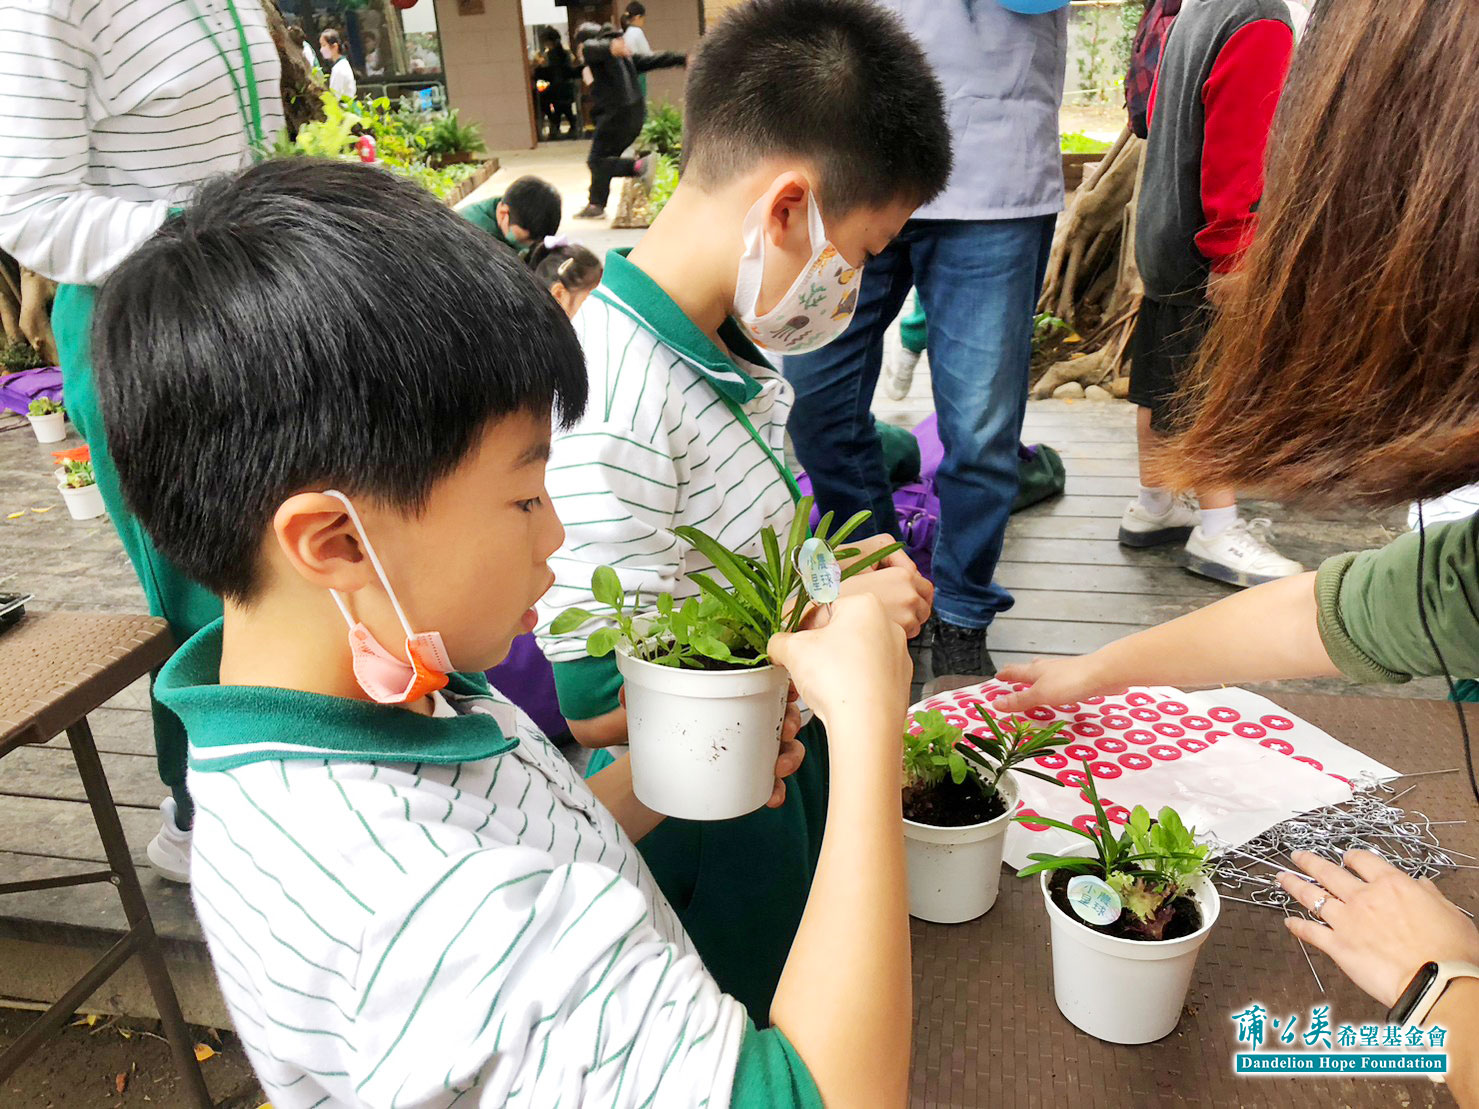 ▲學童們製作小農星球，其上三株植物代表蒲公英基金會三生有幸的概念。